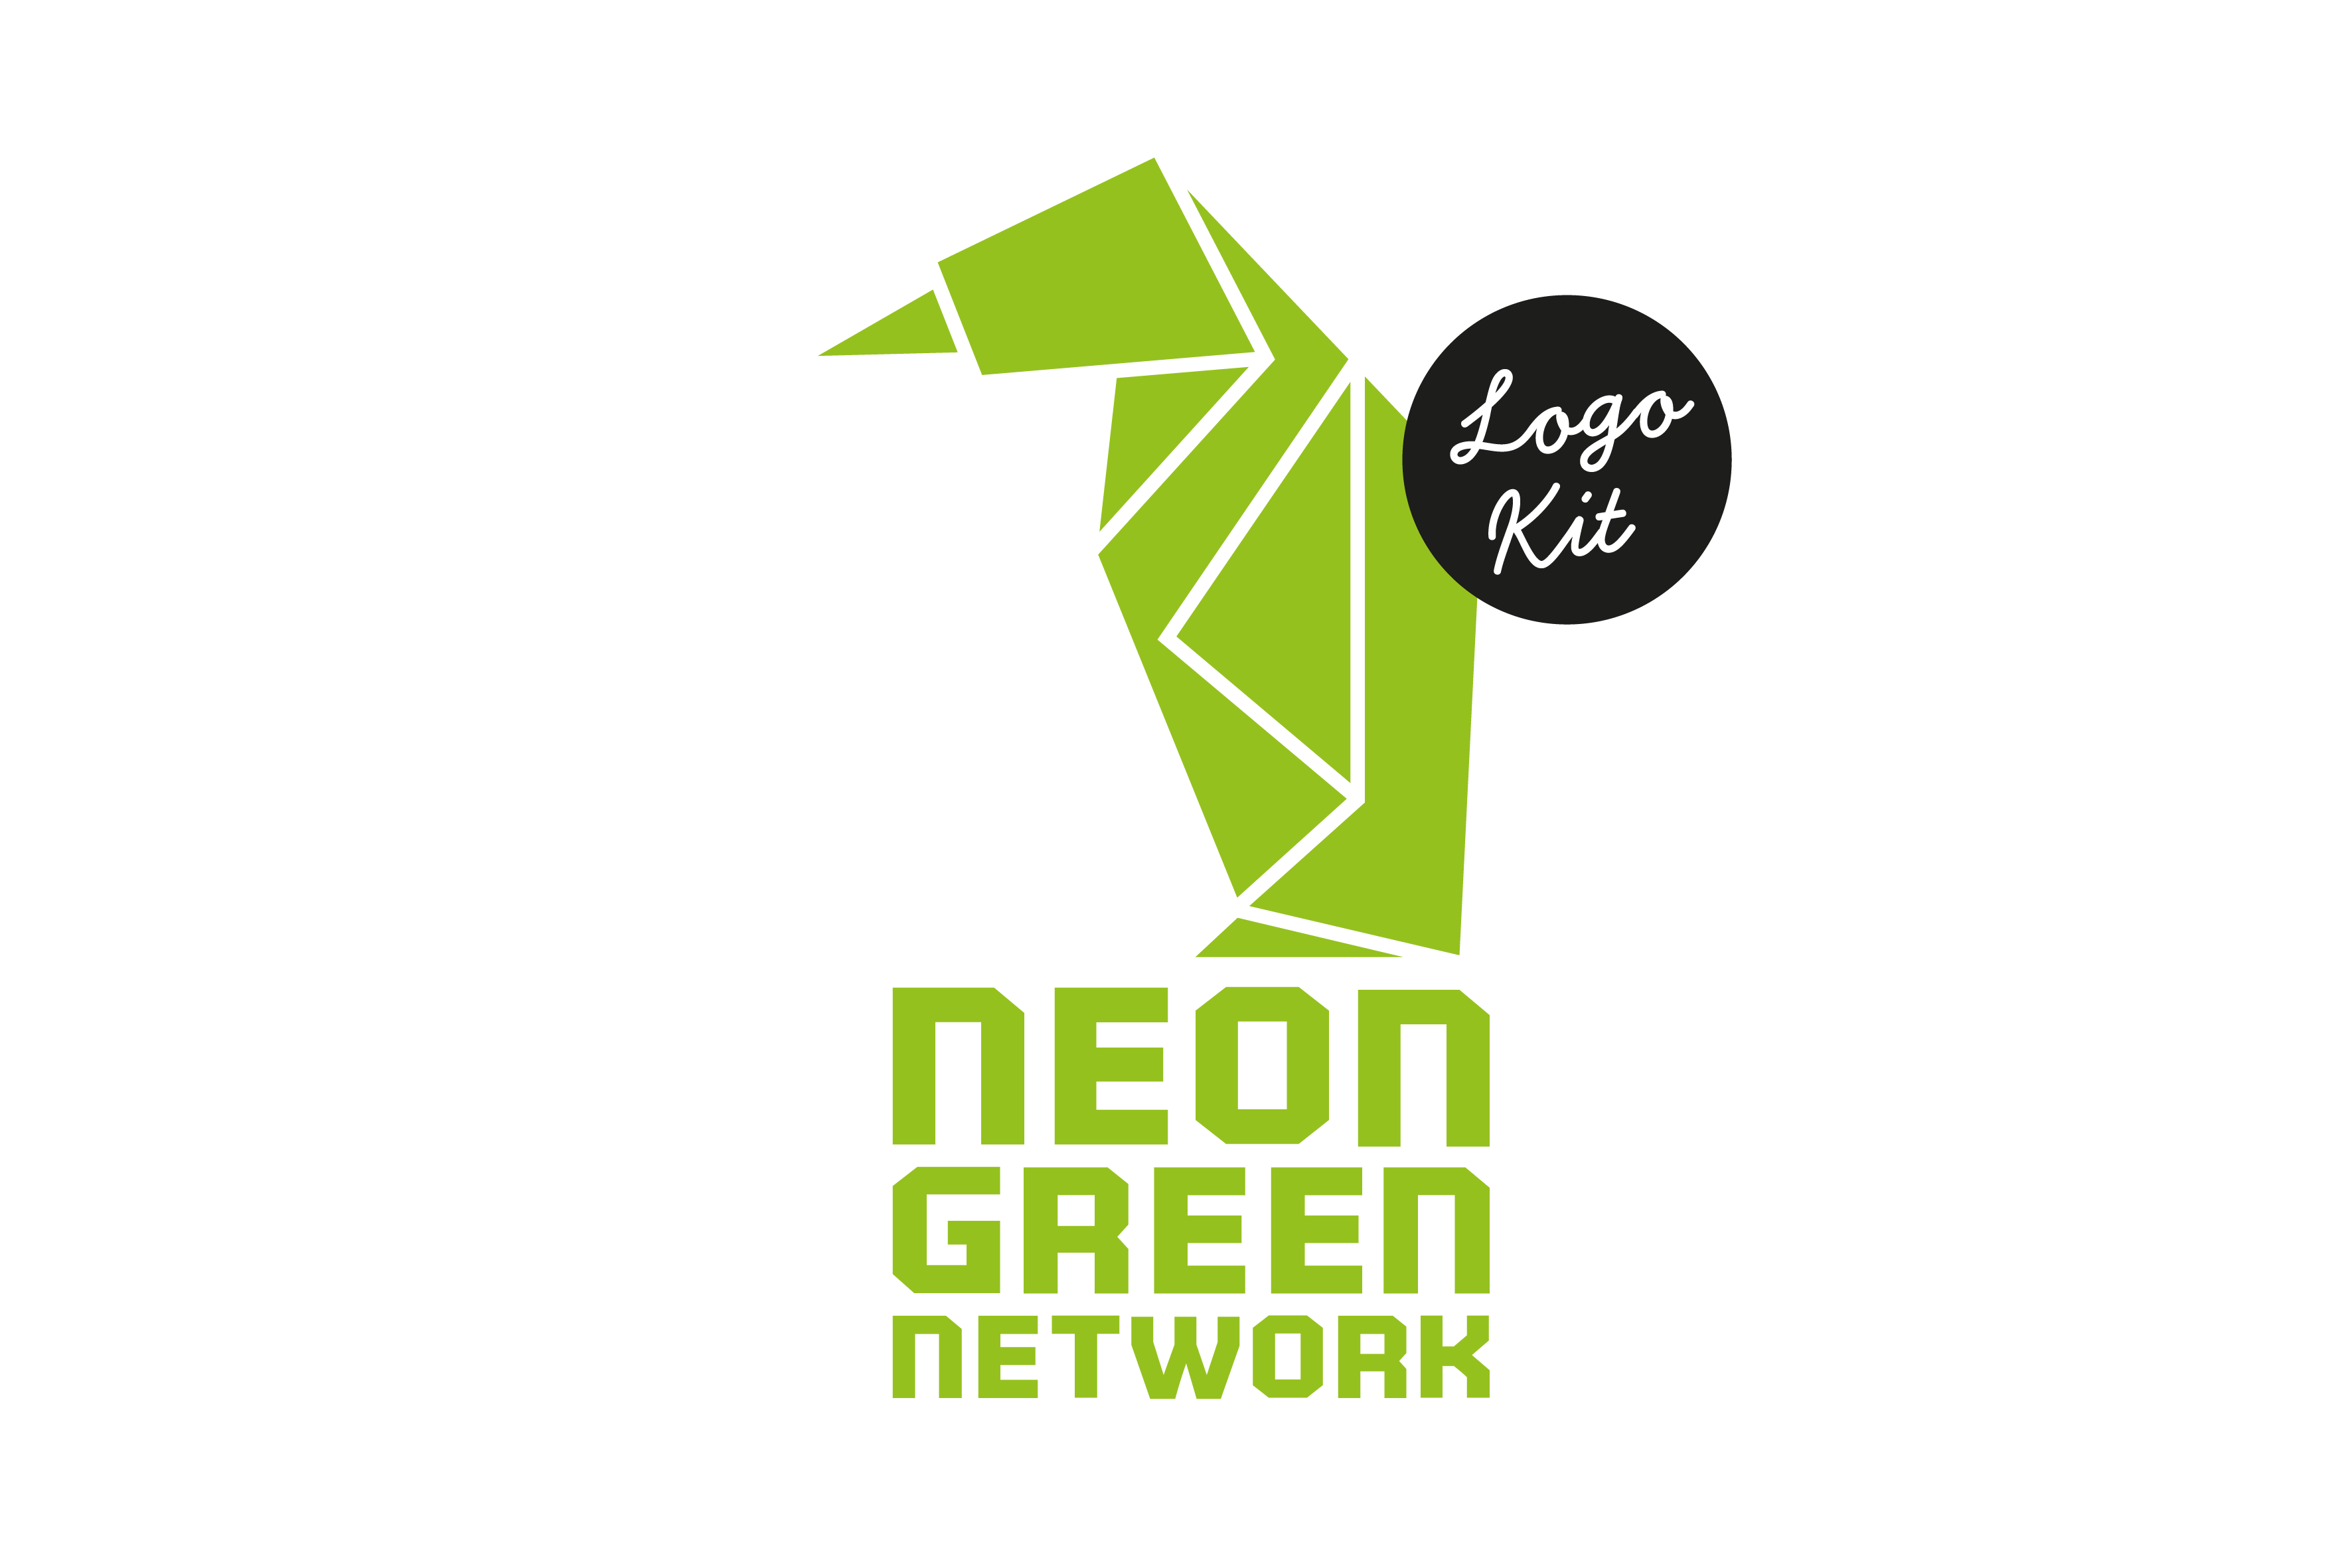 ngn-logo-kit-cover